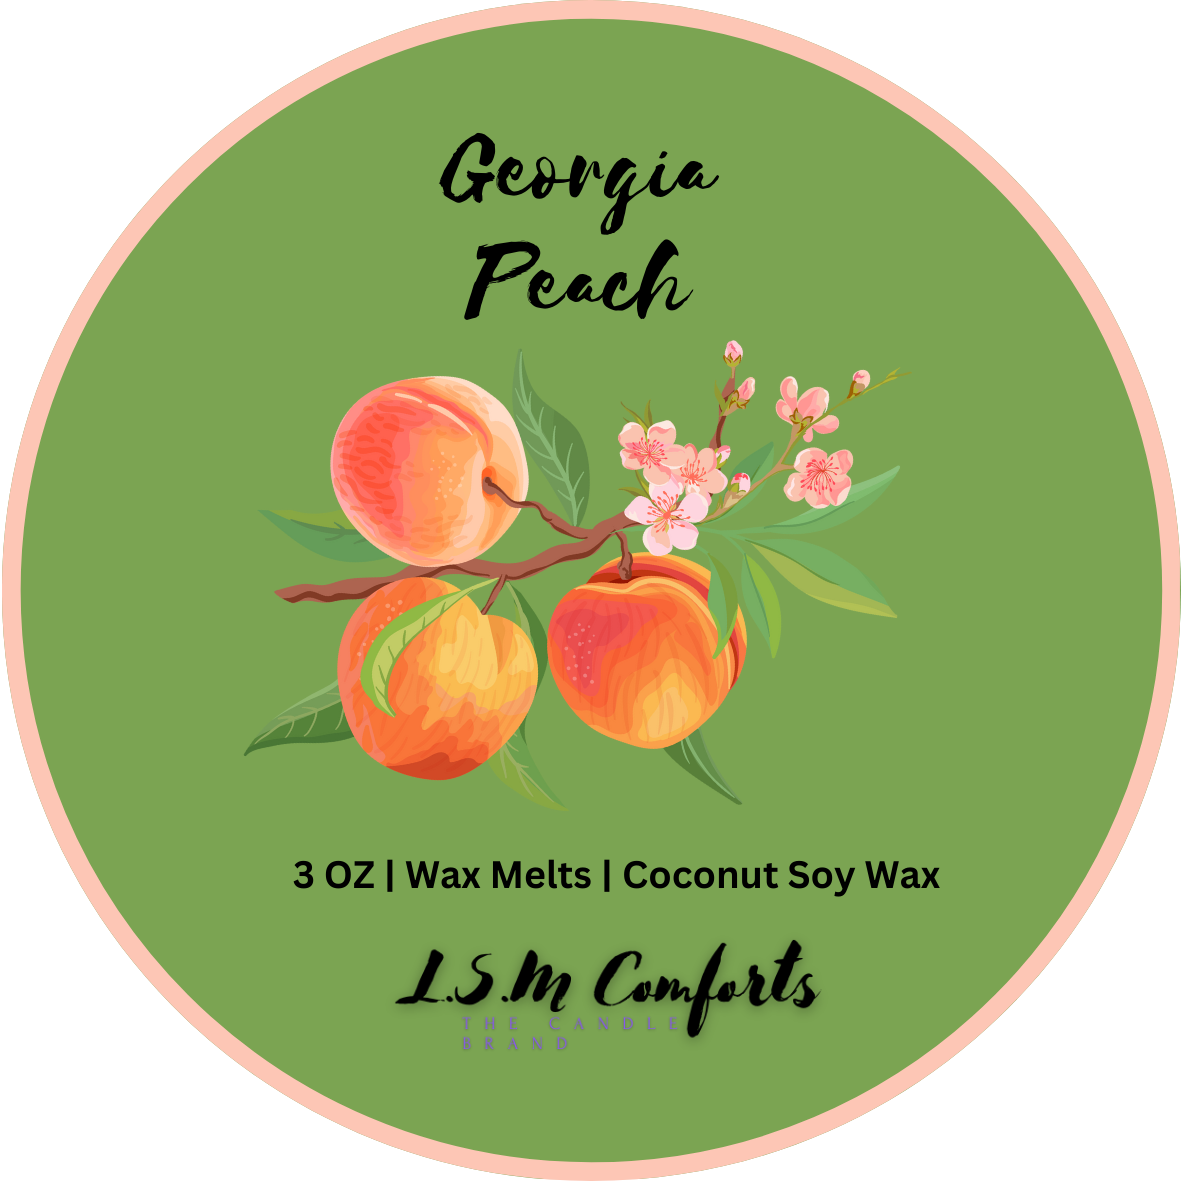 Georgia Peach Wax Melts